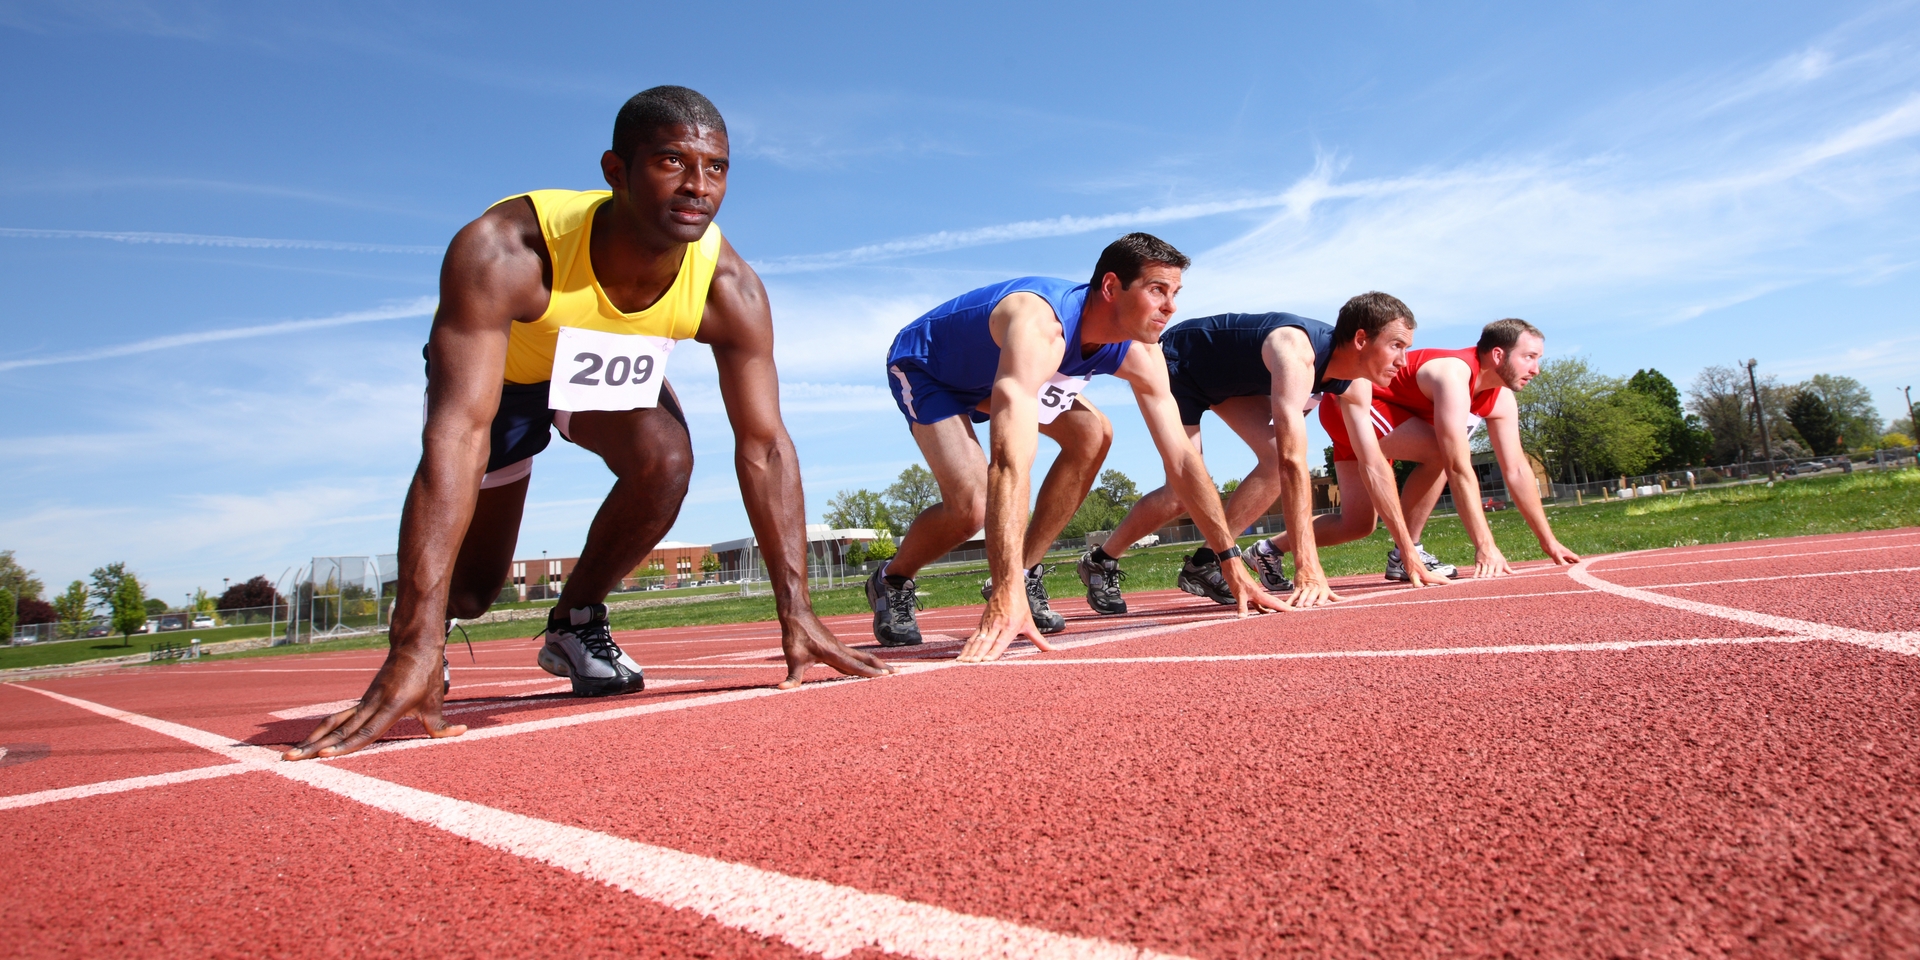 Leichtathletik: Geänderte Trainingszeiten, kein Probetraining möglich